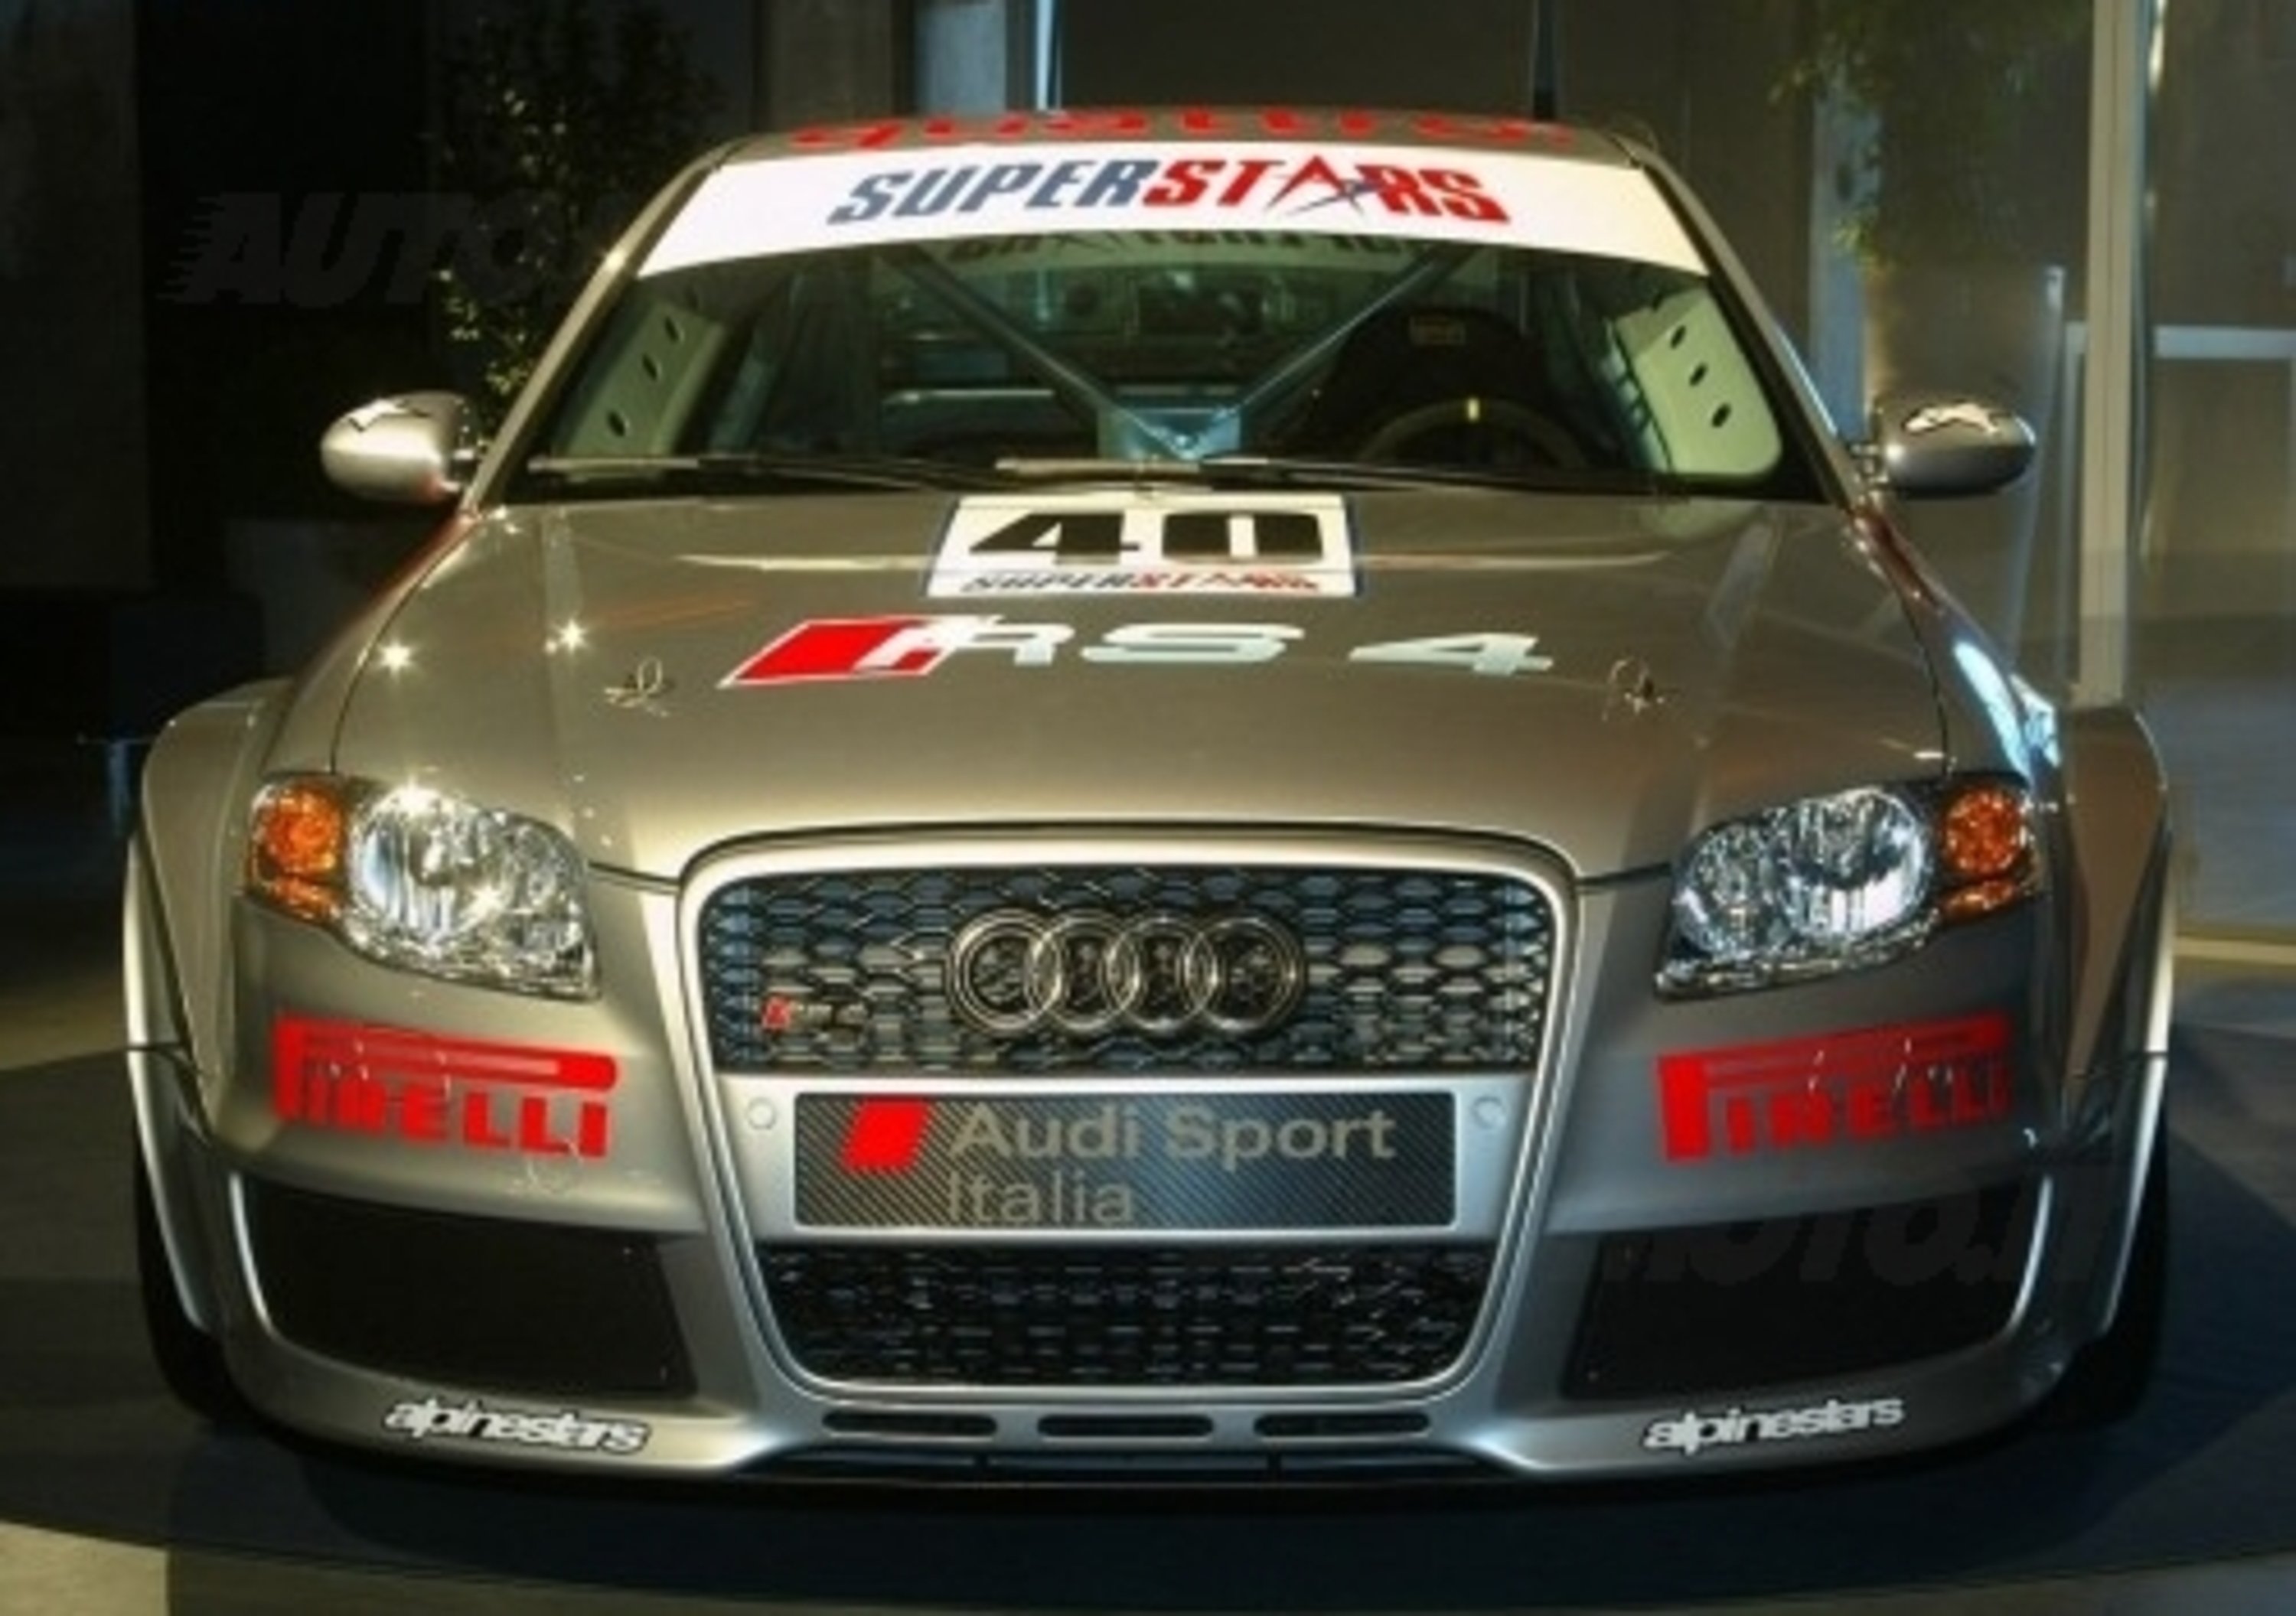 Audi RS4 Superstars